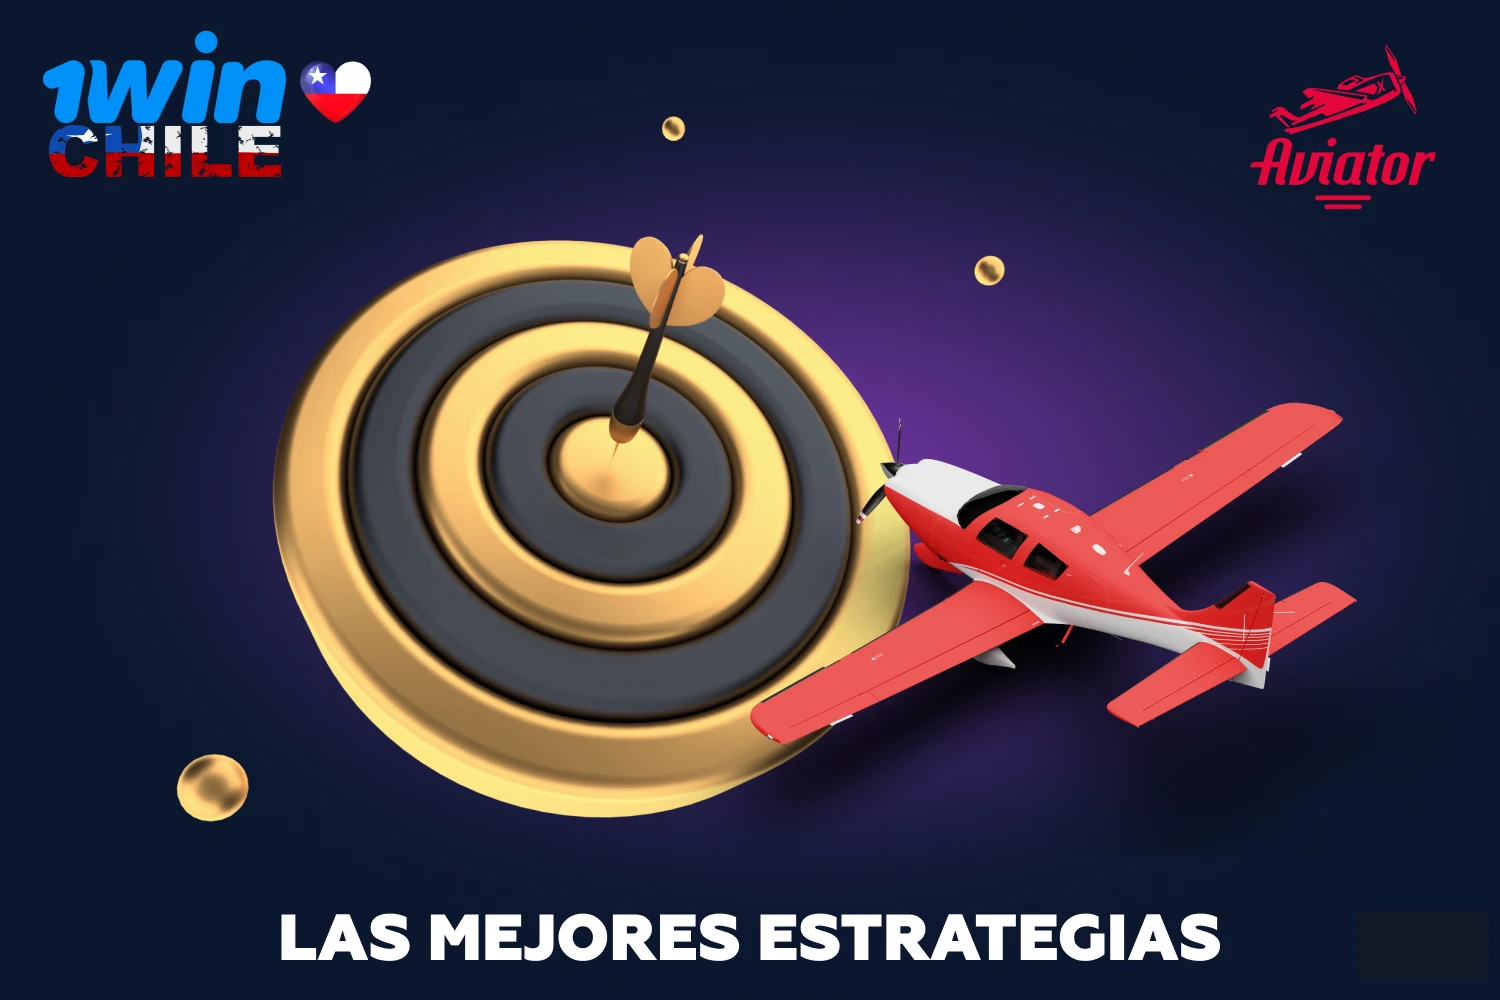 1win Aviator es un juego que se basa únicamente en la suerte, pero los jugadores experimentados de Chile tienen sus propias estrategias y técnicas que pueden utilizar